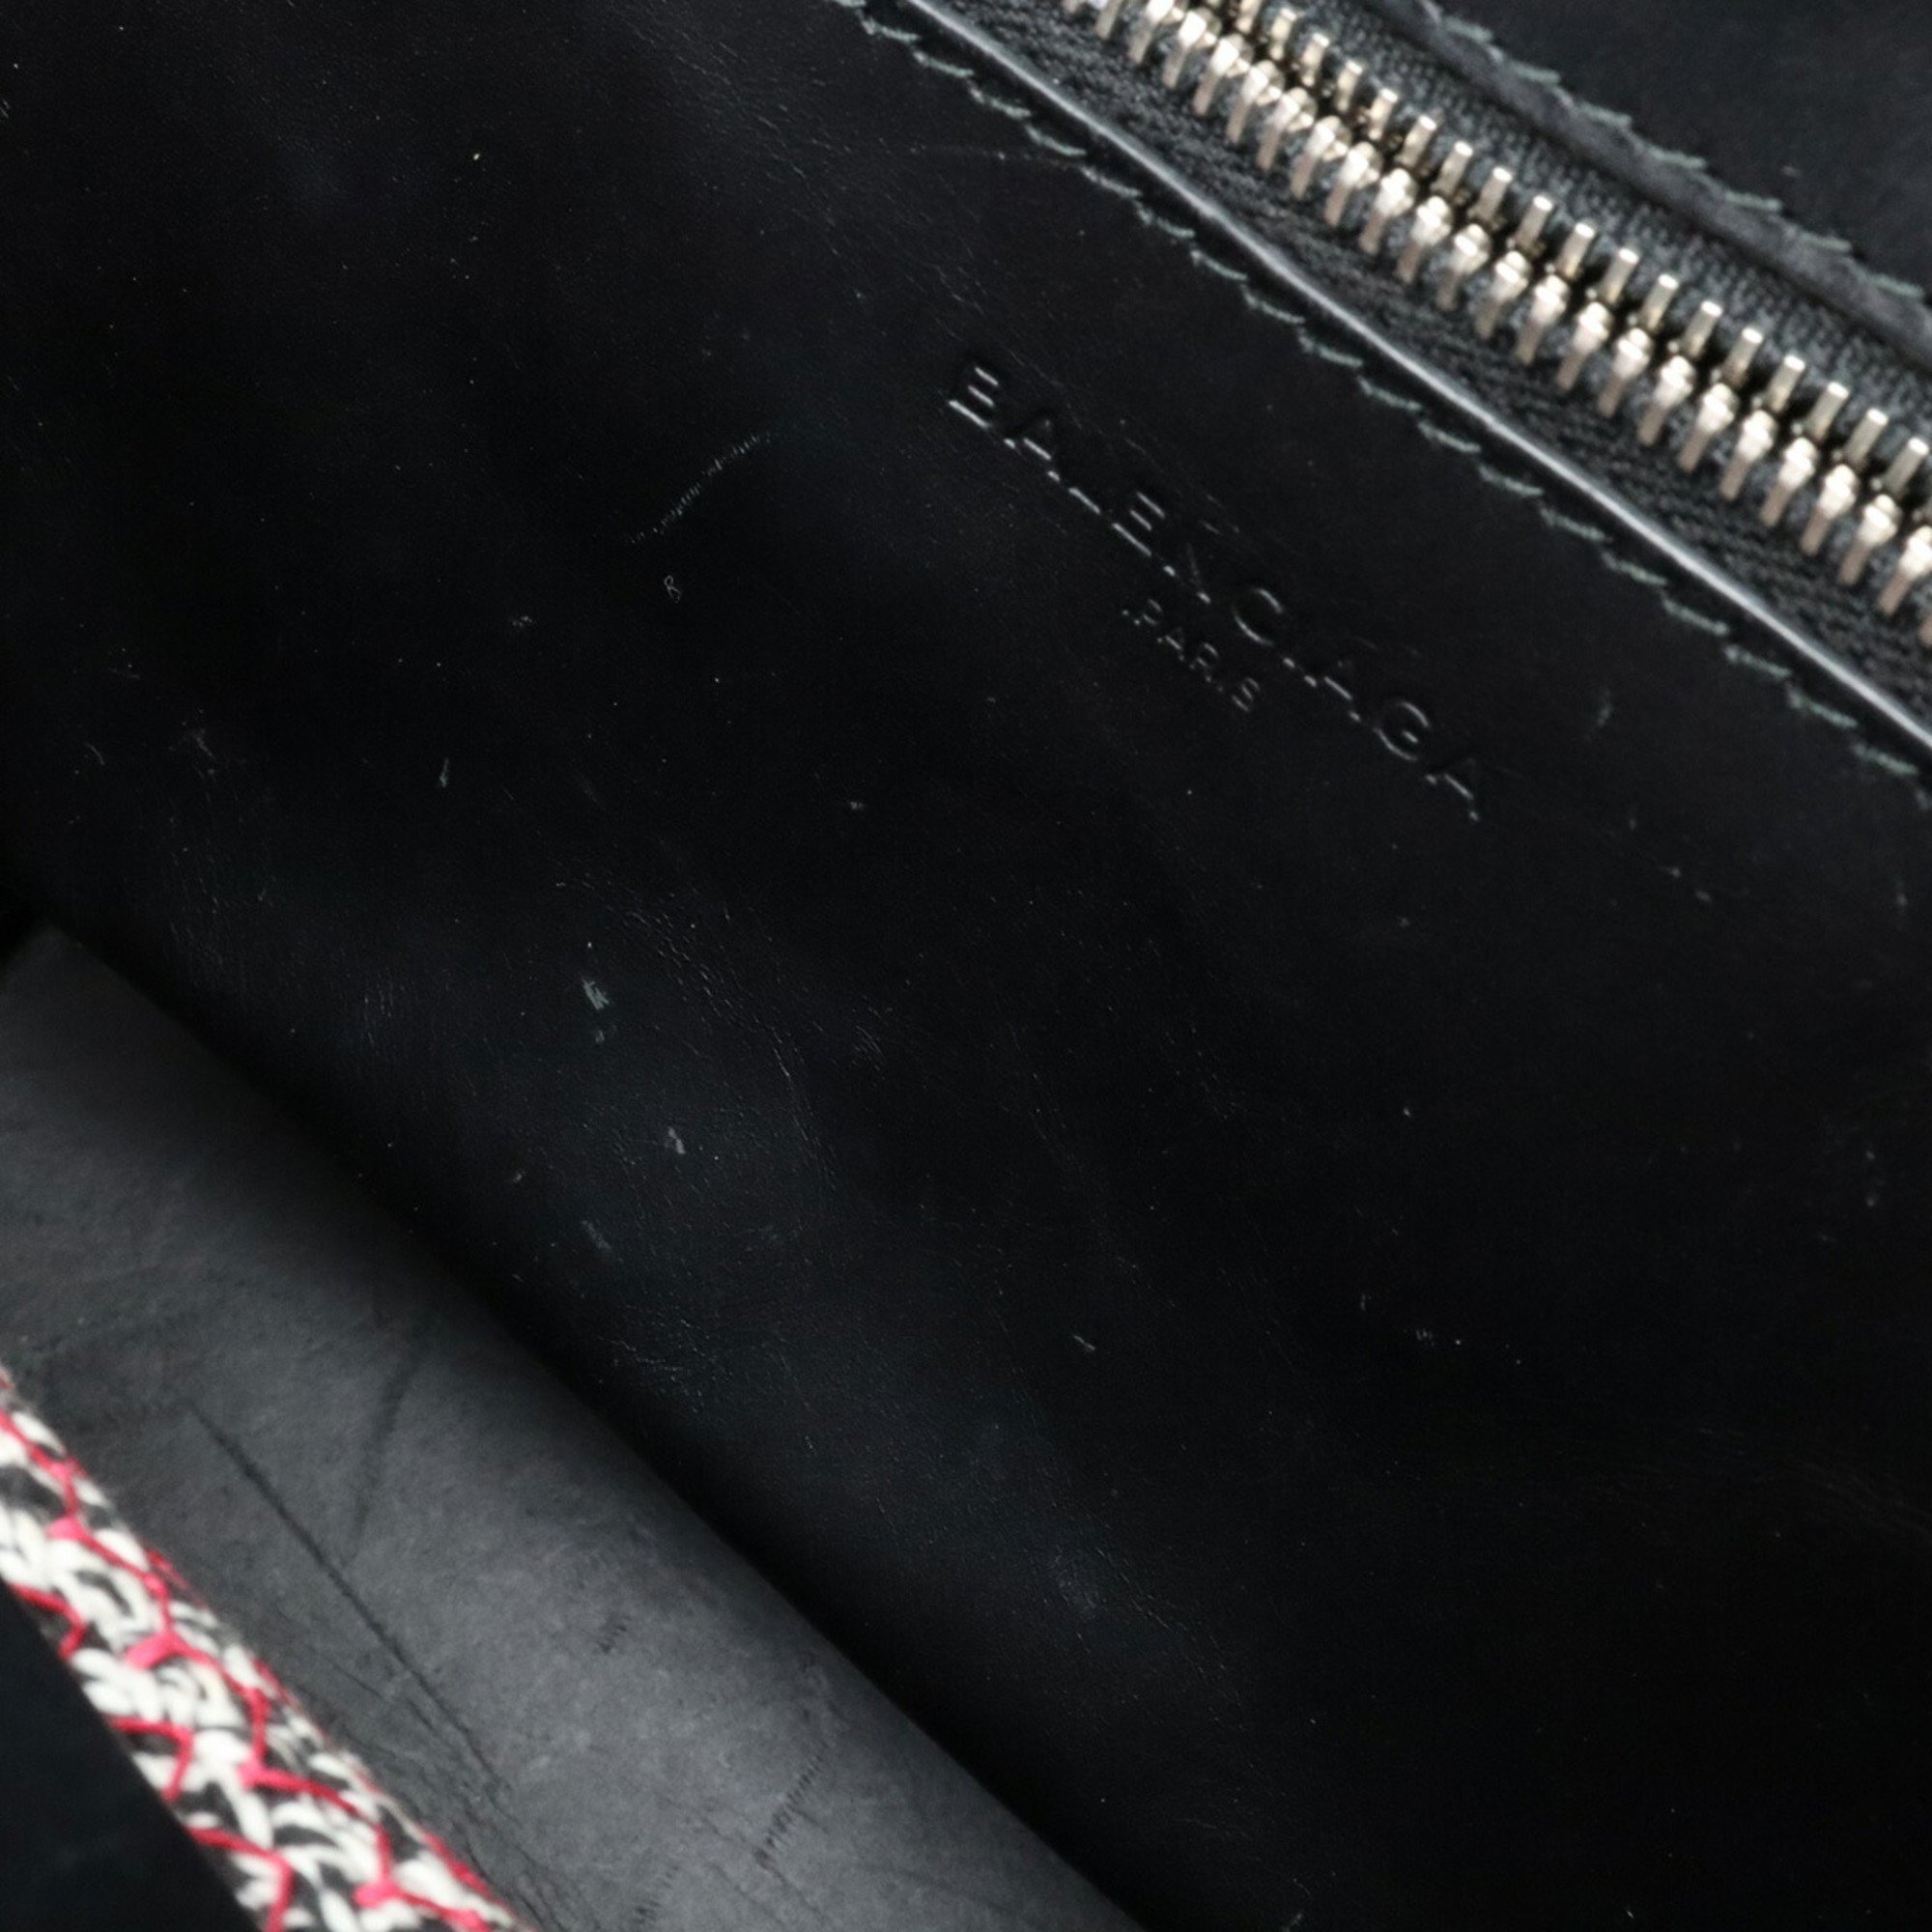 BALENCIAGA Zigzacker Cabas Handbag Shoulder Bag Tweed Cotton Leather Red Multi Black 410790